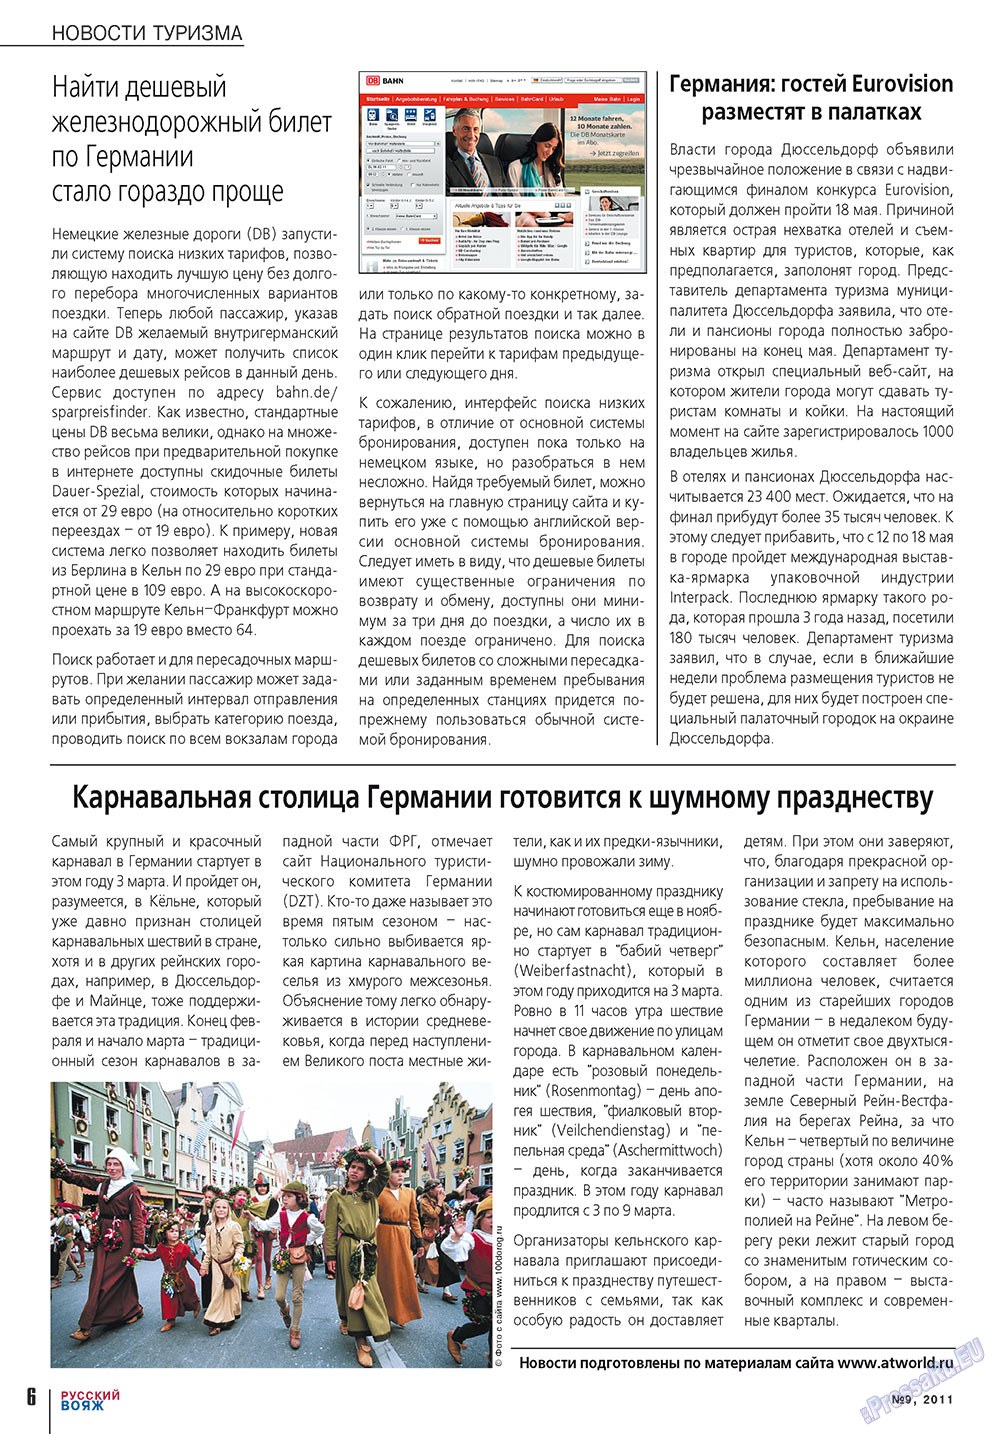 Русский вояж (журнал). 2011 год, номер 9, стр. 6